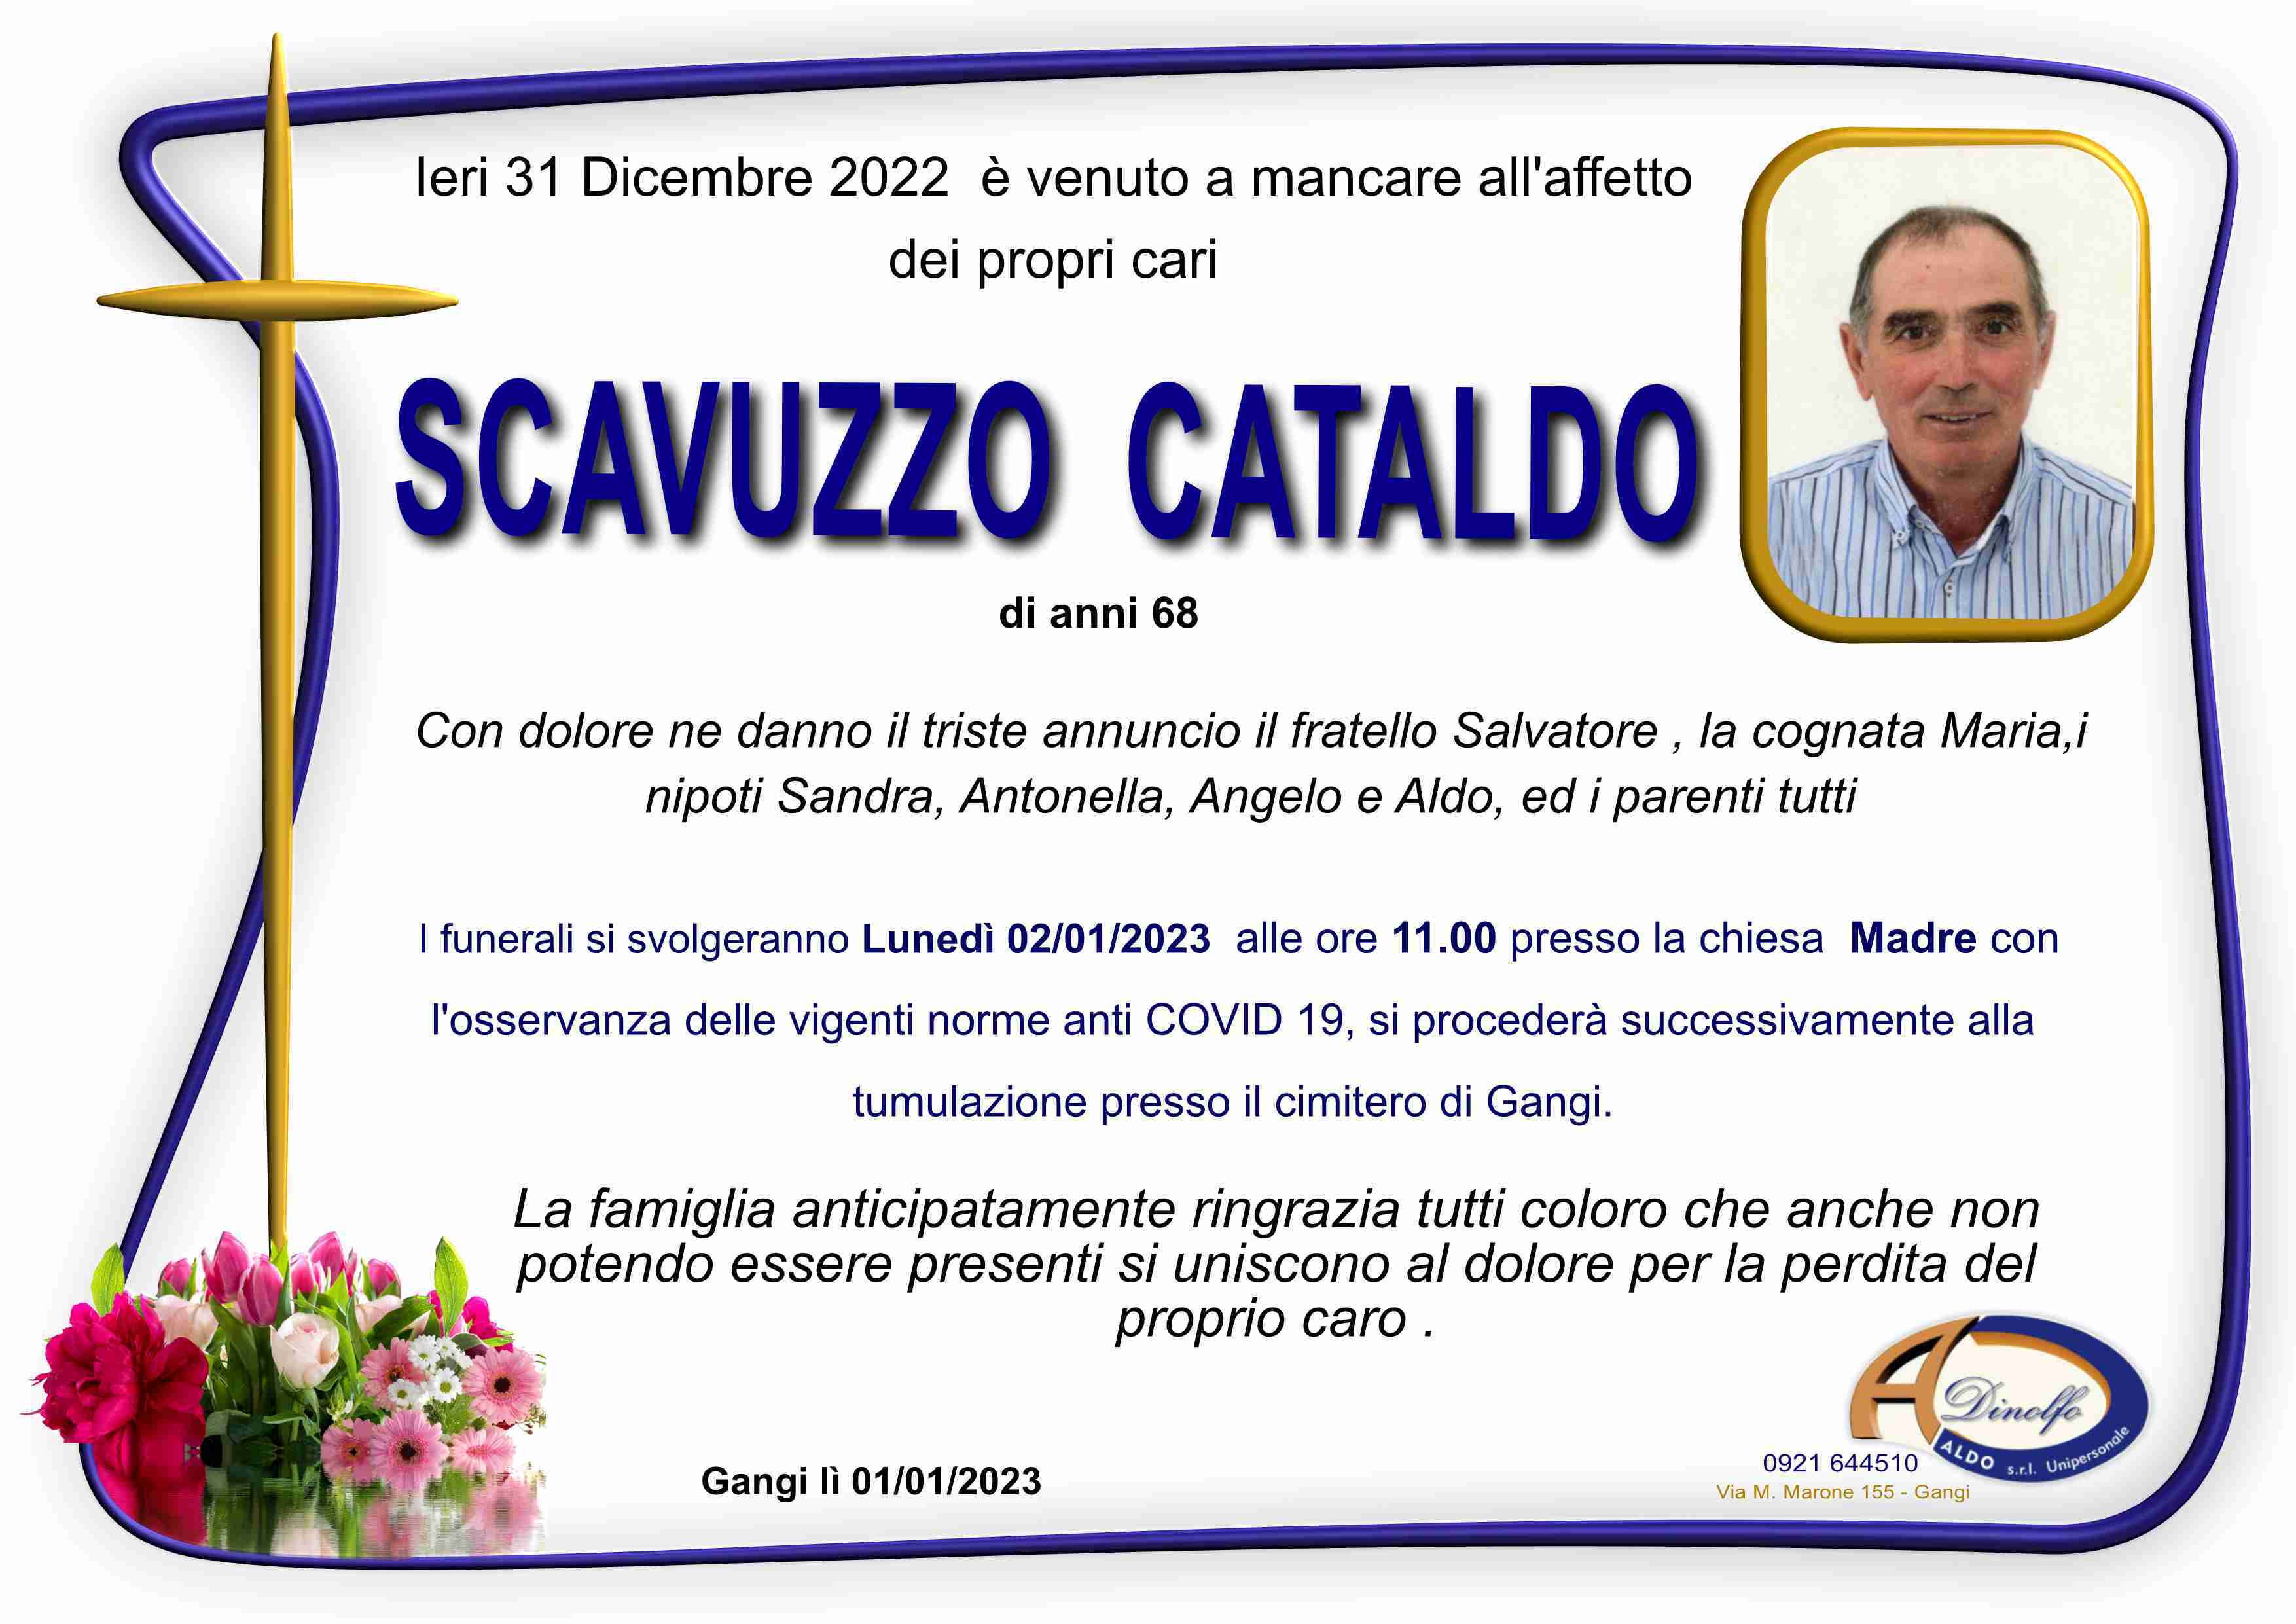 Cataldo Scavuzzo